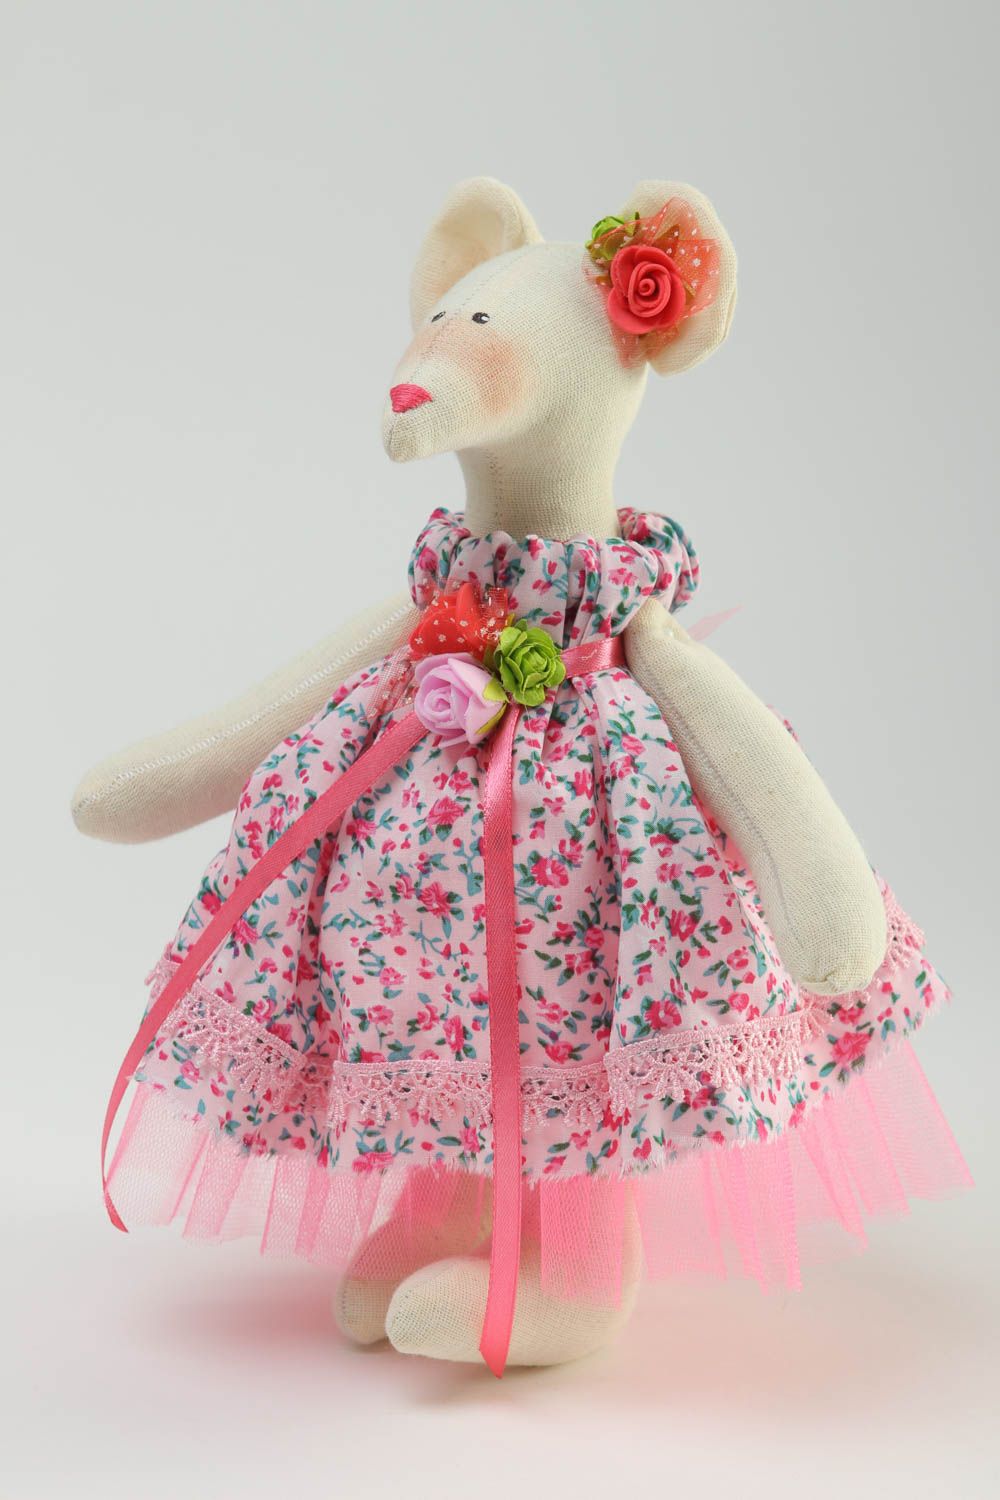 Игрушка ручной работы игрушка мышонок в платье хлопковая оригинальная игрушка  фото 2